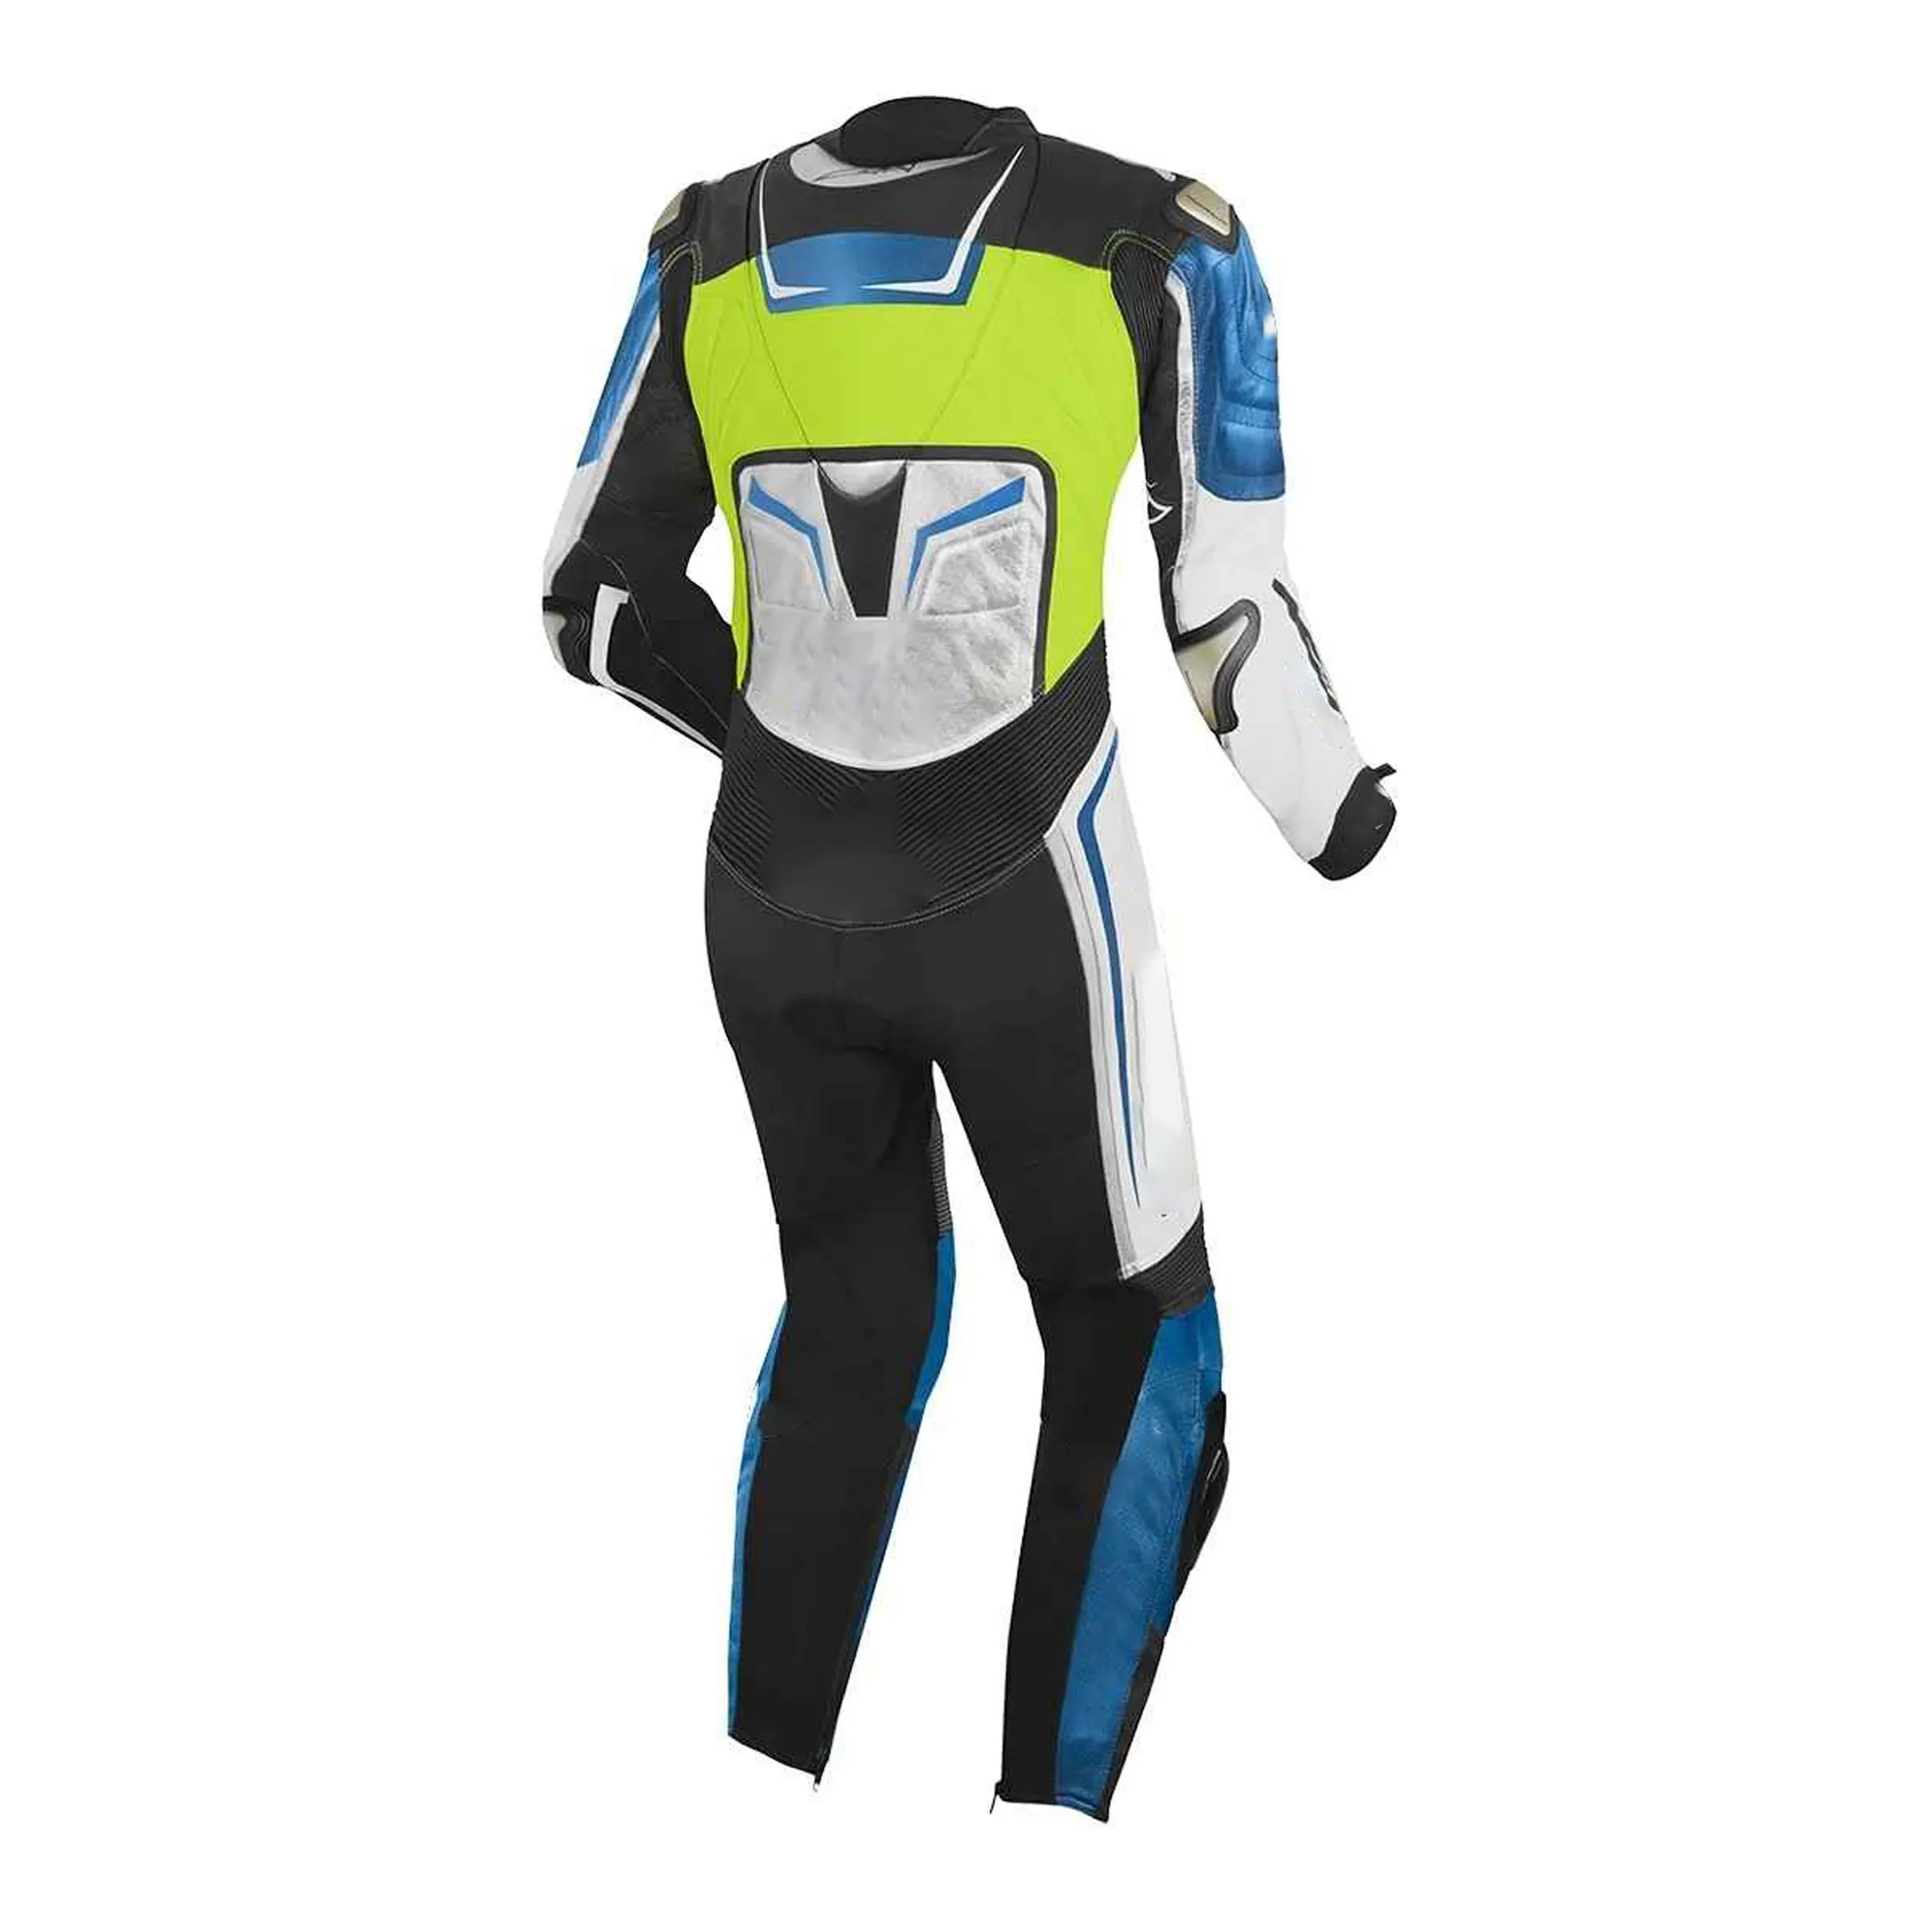 עיצוב אחרון מותאם אישית אופנוע סובלימציה ריק & מרוץ אוטומטי ללבוש בגדי ספורט סיטונאי